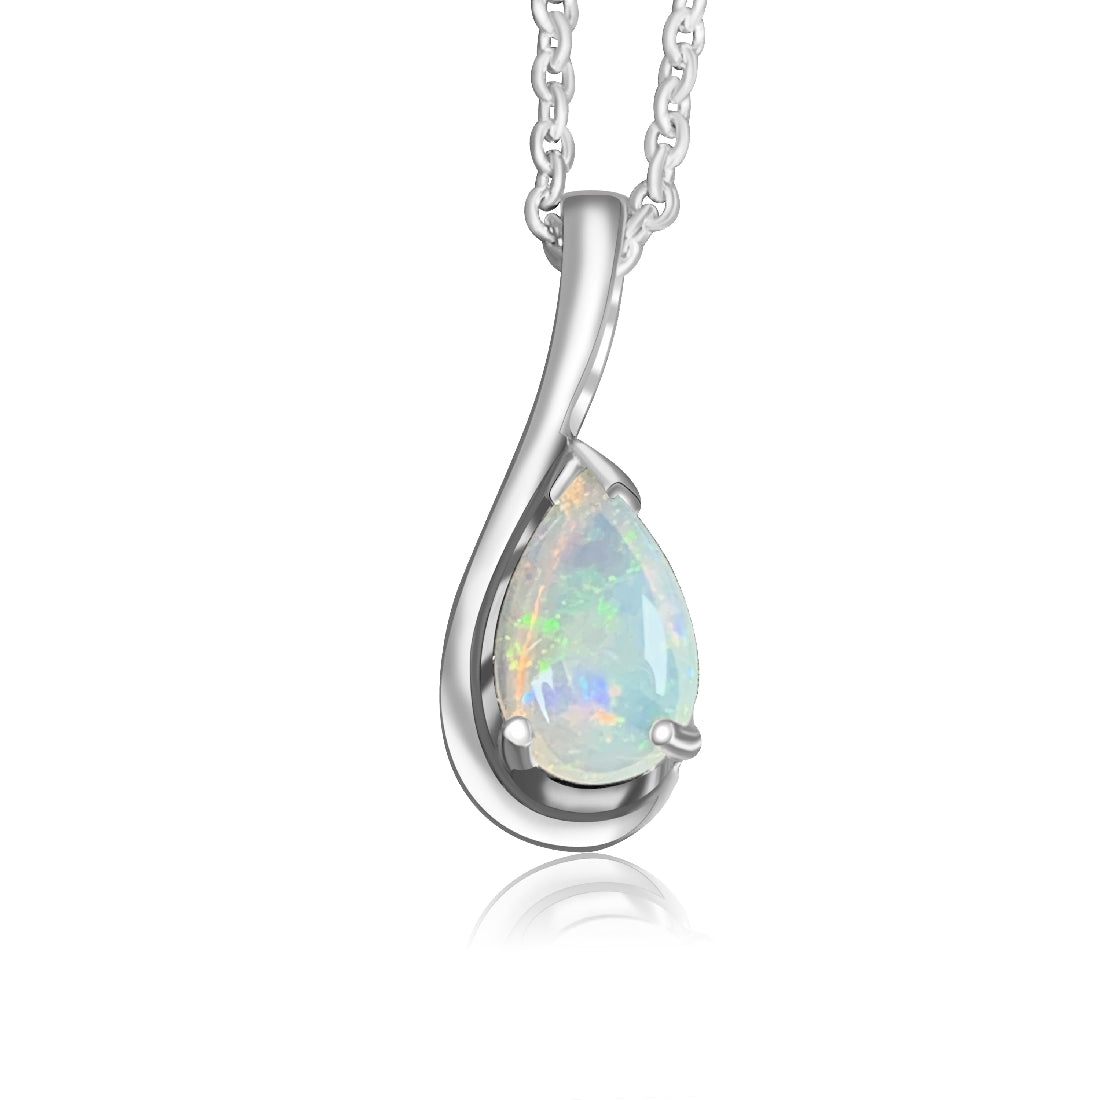 Sterling Silver 8x5mm Pearshape Opal pendant - Masterpiece Jewellery Opal & Gems Sydney Australia | Online Shop